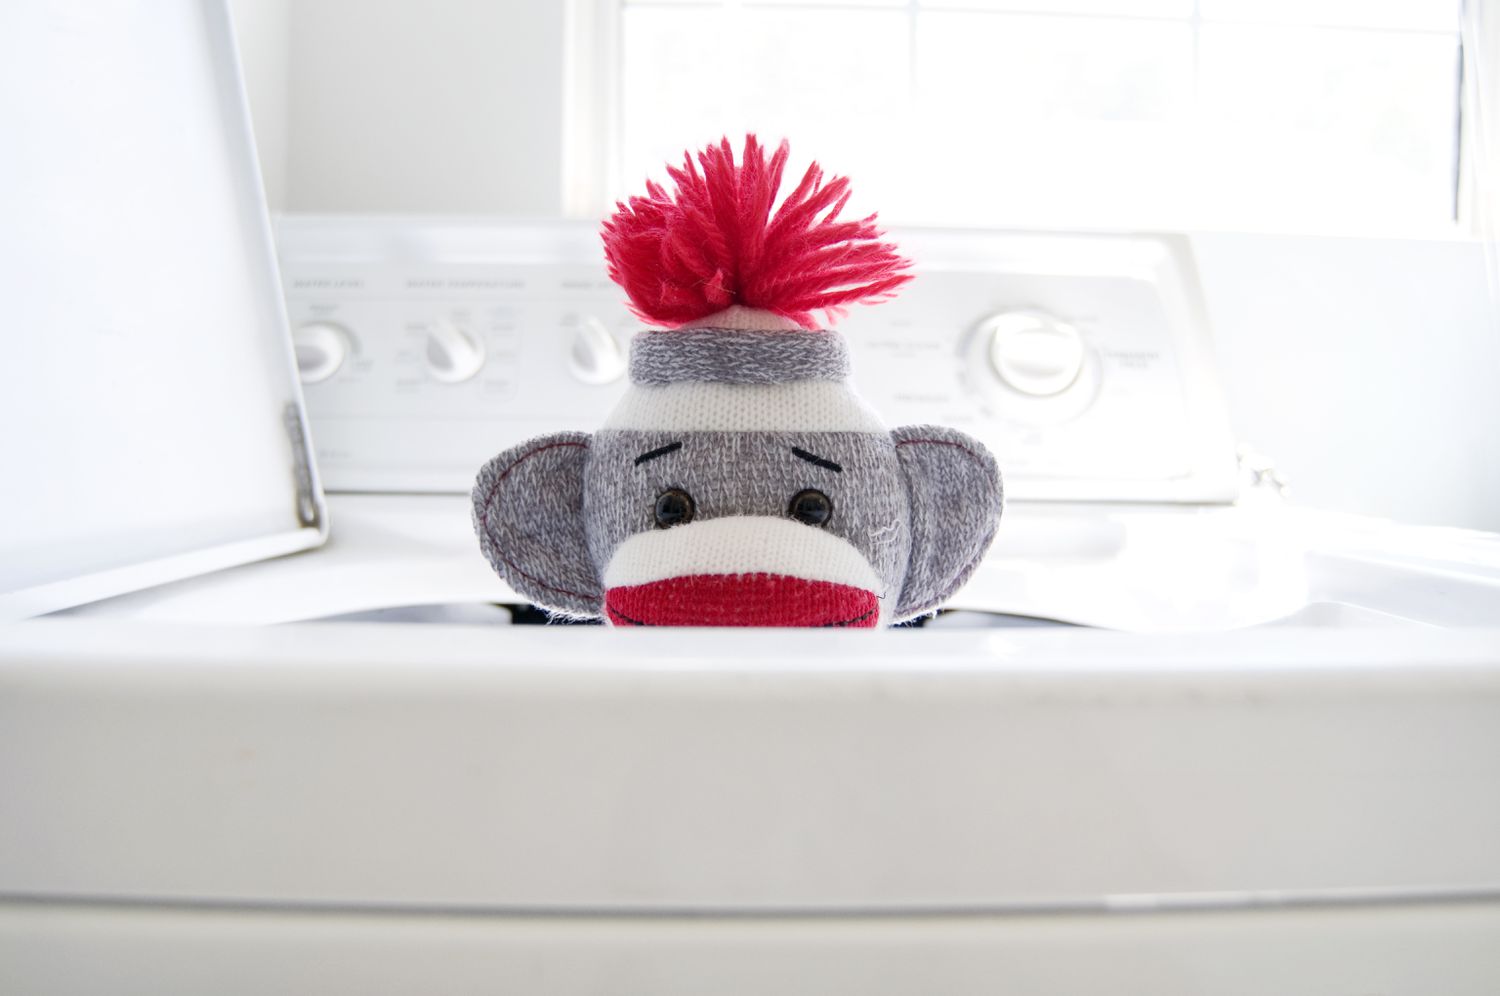 Sockenspielzeug in der Waschmaschine